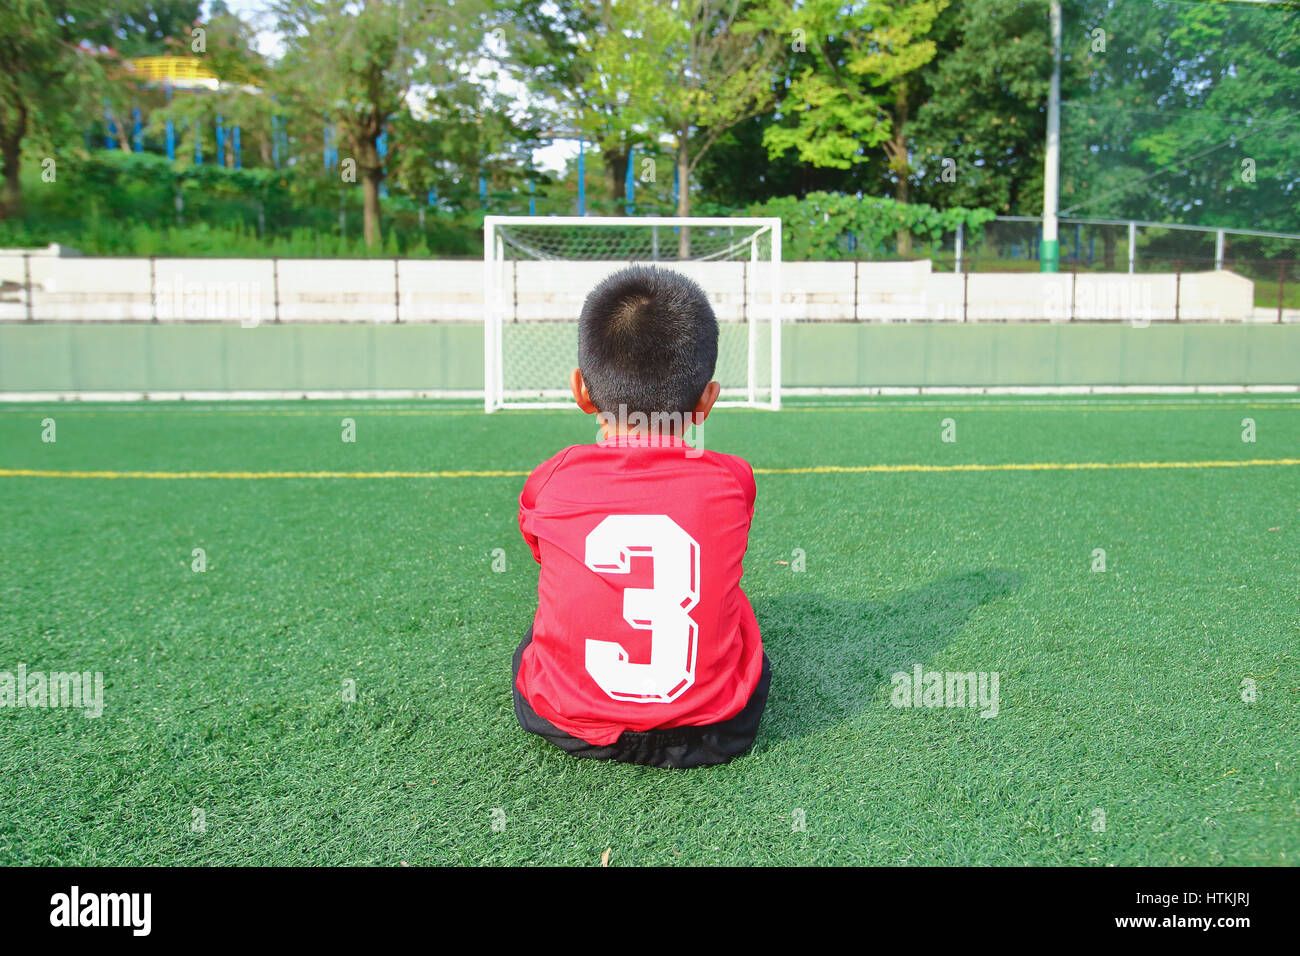 Terrain de soccer kid au japonais Banque D'Images